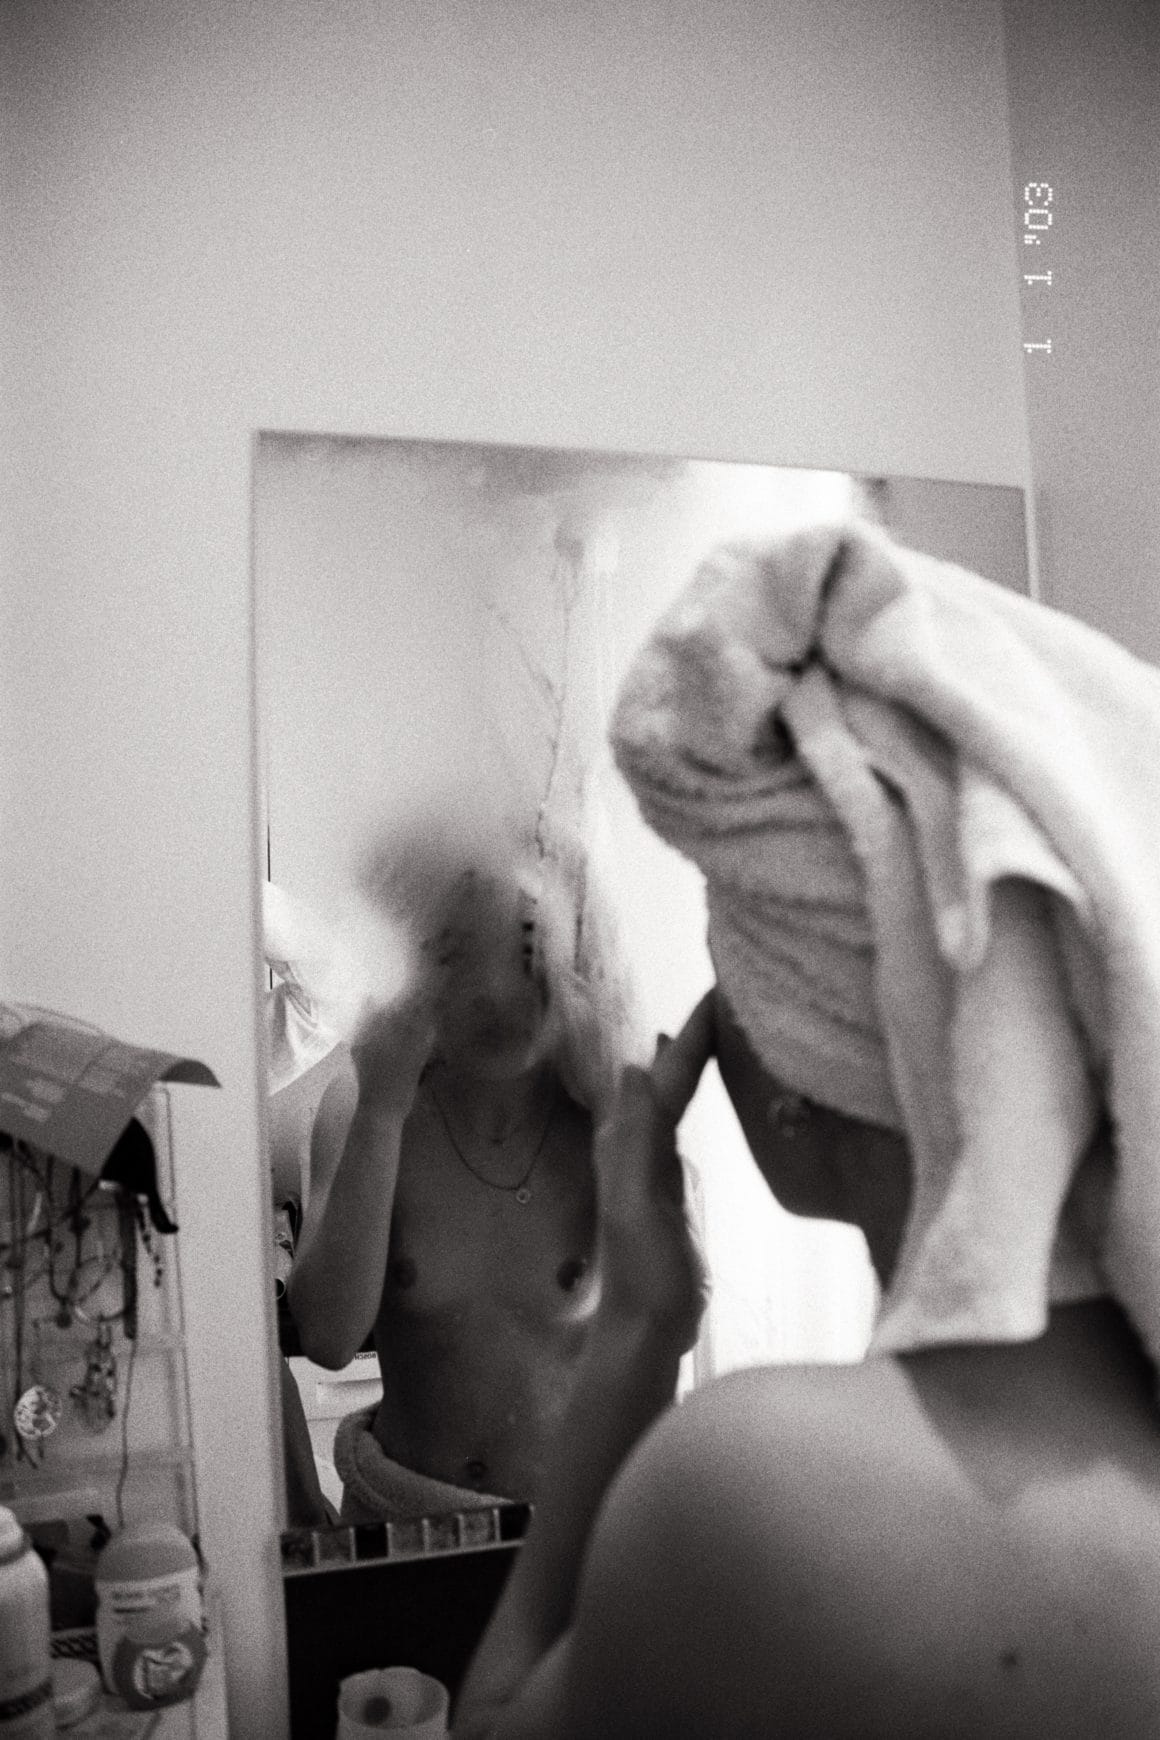 Reine louve, photo noir/blanc, femme qui se regarde dans un miroir de salle de bain